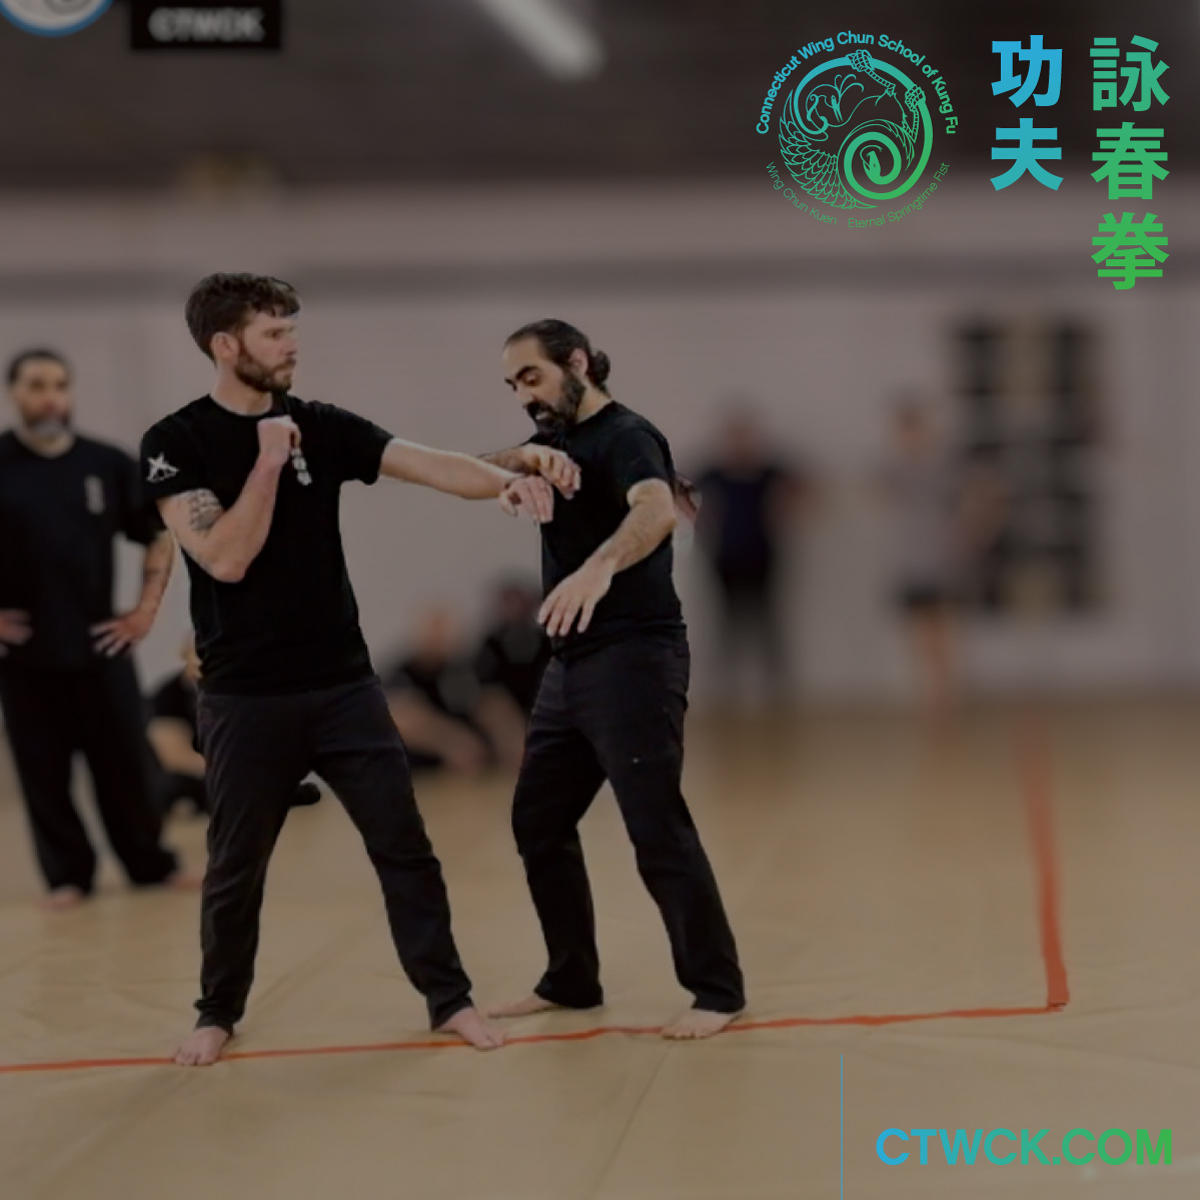 Wing Chun Entry Method – Footage from 2023 WC/JKD Seminar at PSDTC